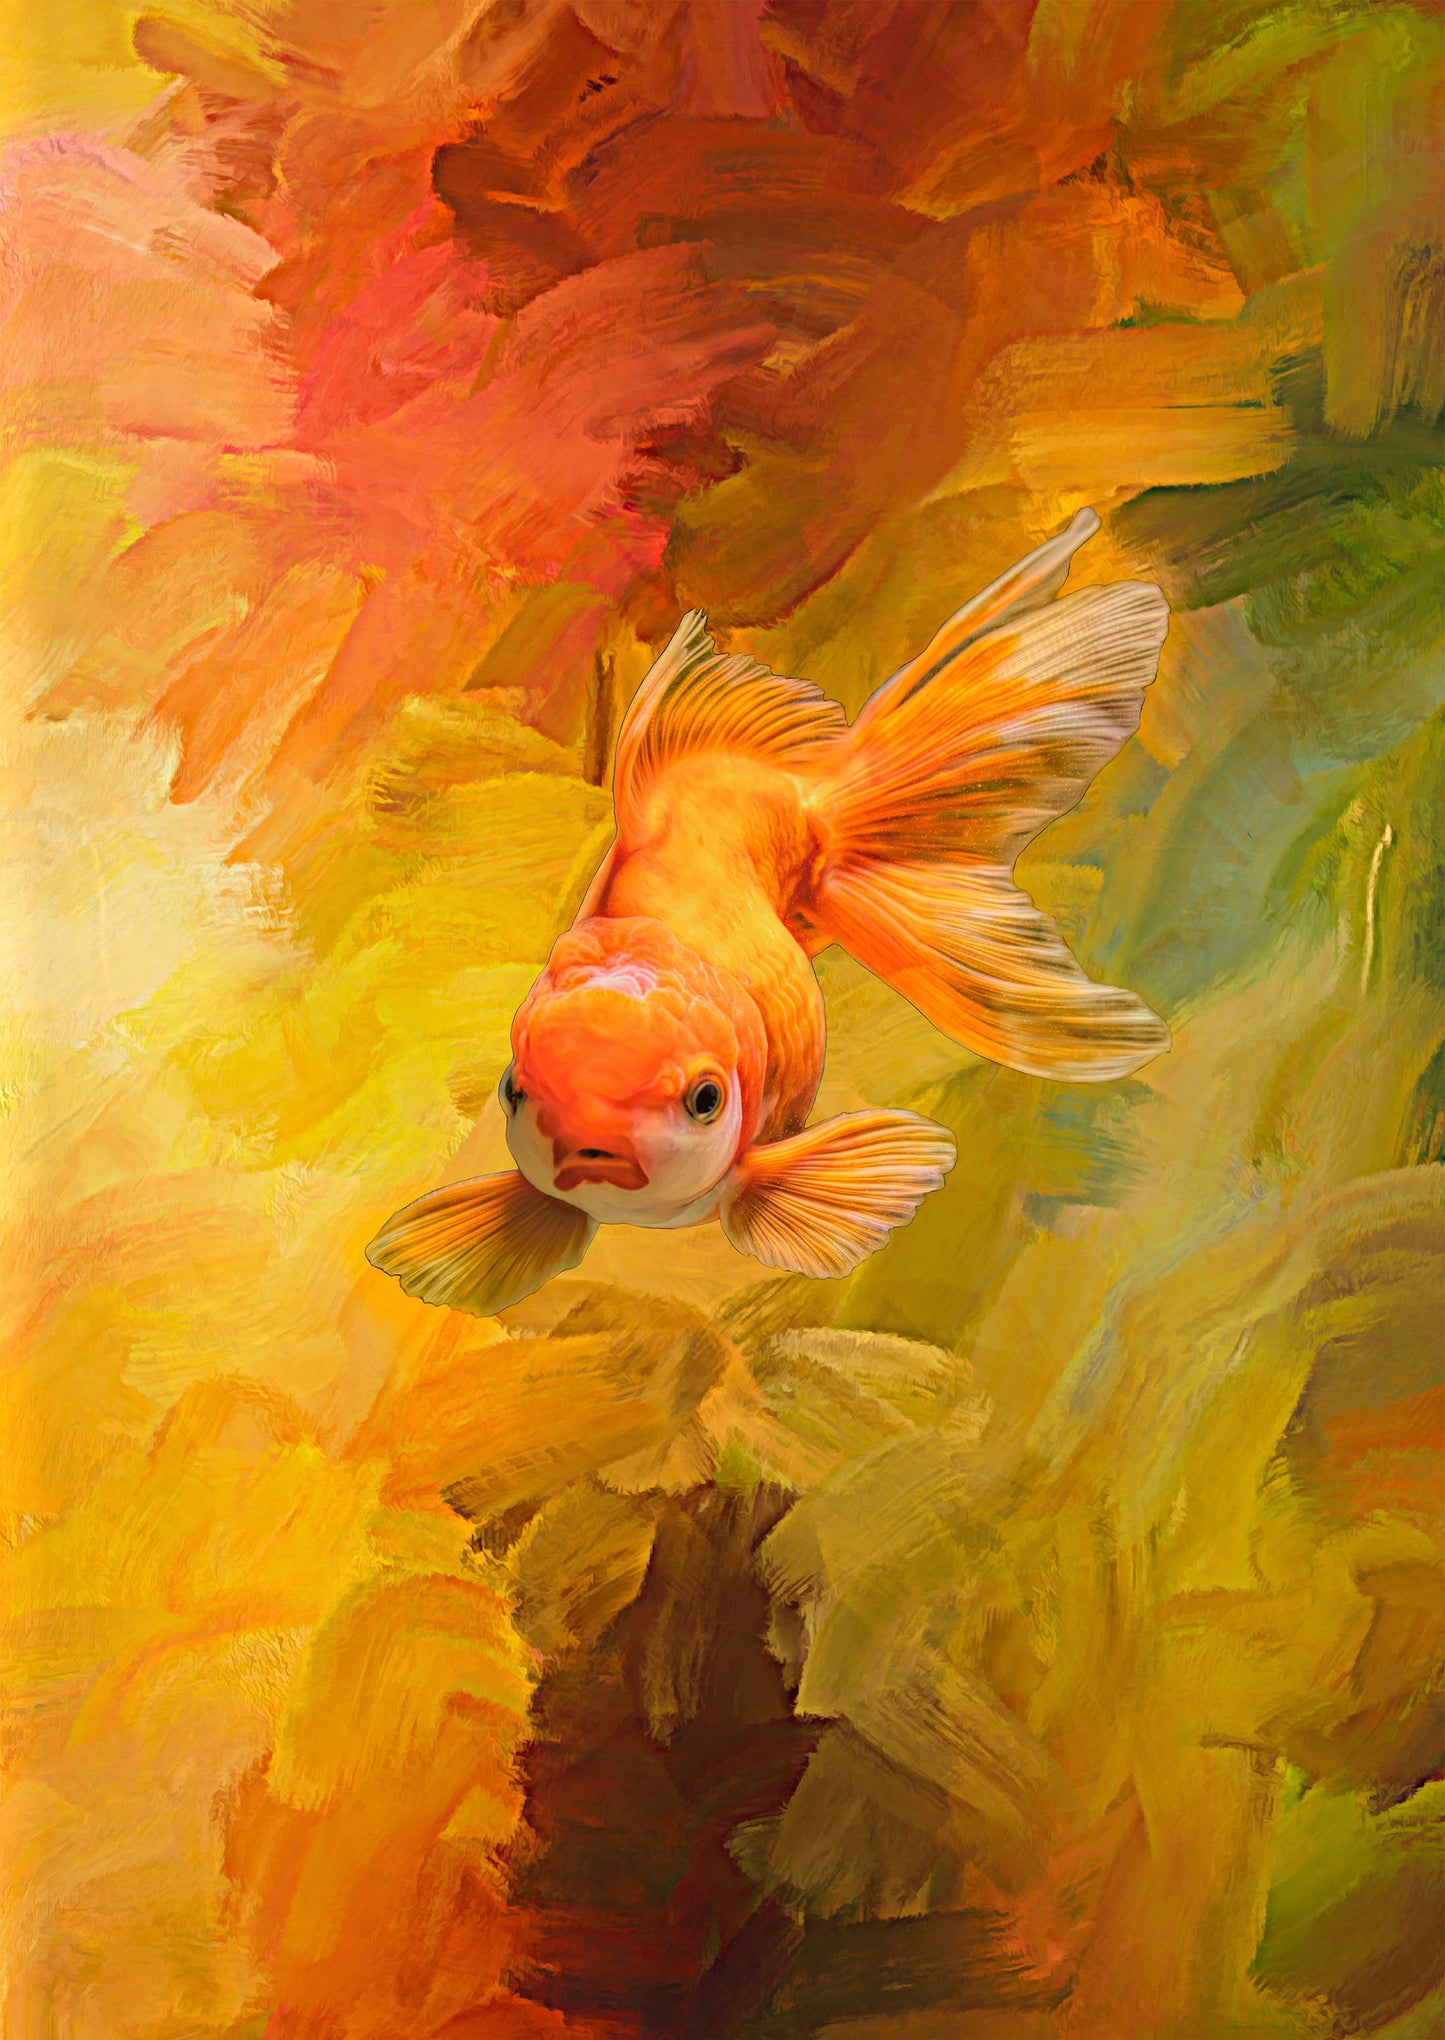 Underwater Goldfish Fabric Panel - OCE-024